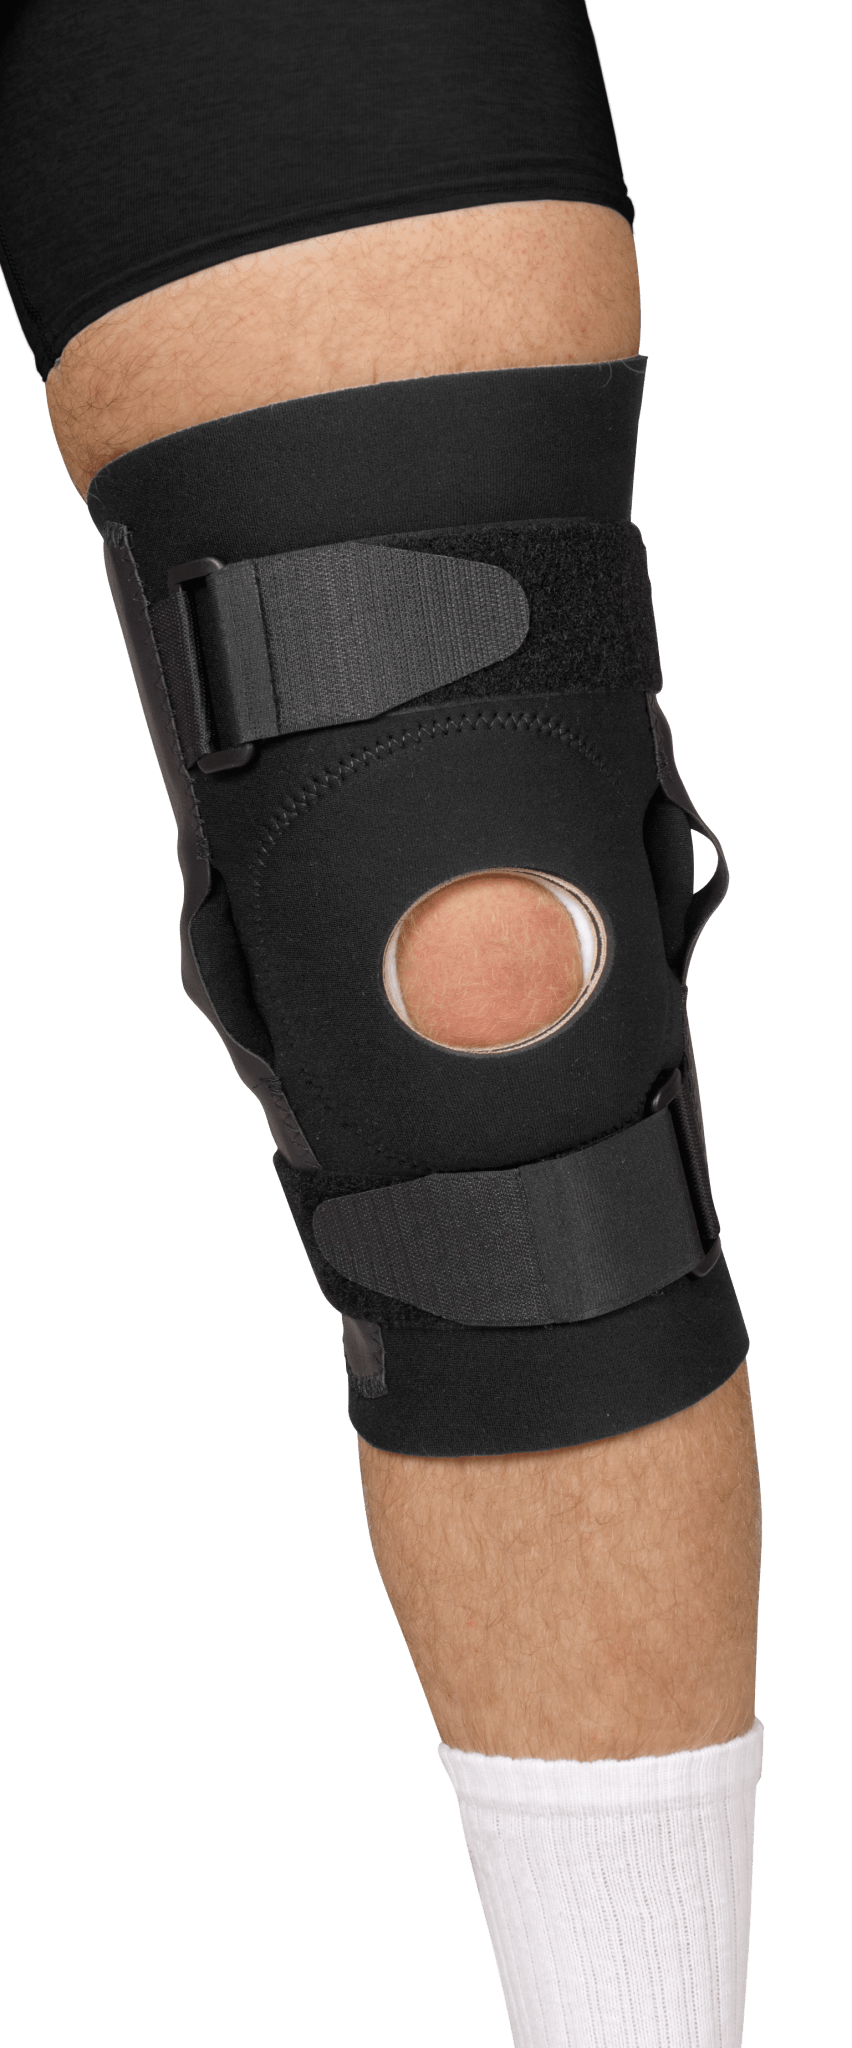 EA/1 - Leader Neoprene Hinged Knee Support, Black, Large - Best Buy Medical Supplies